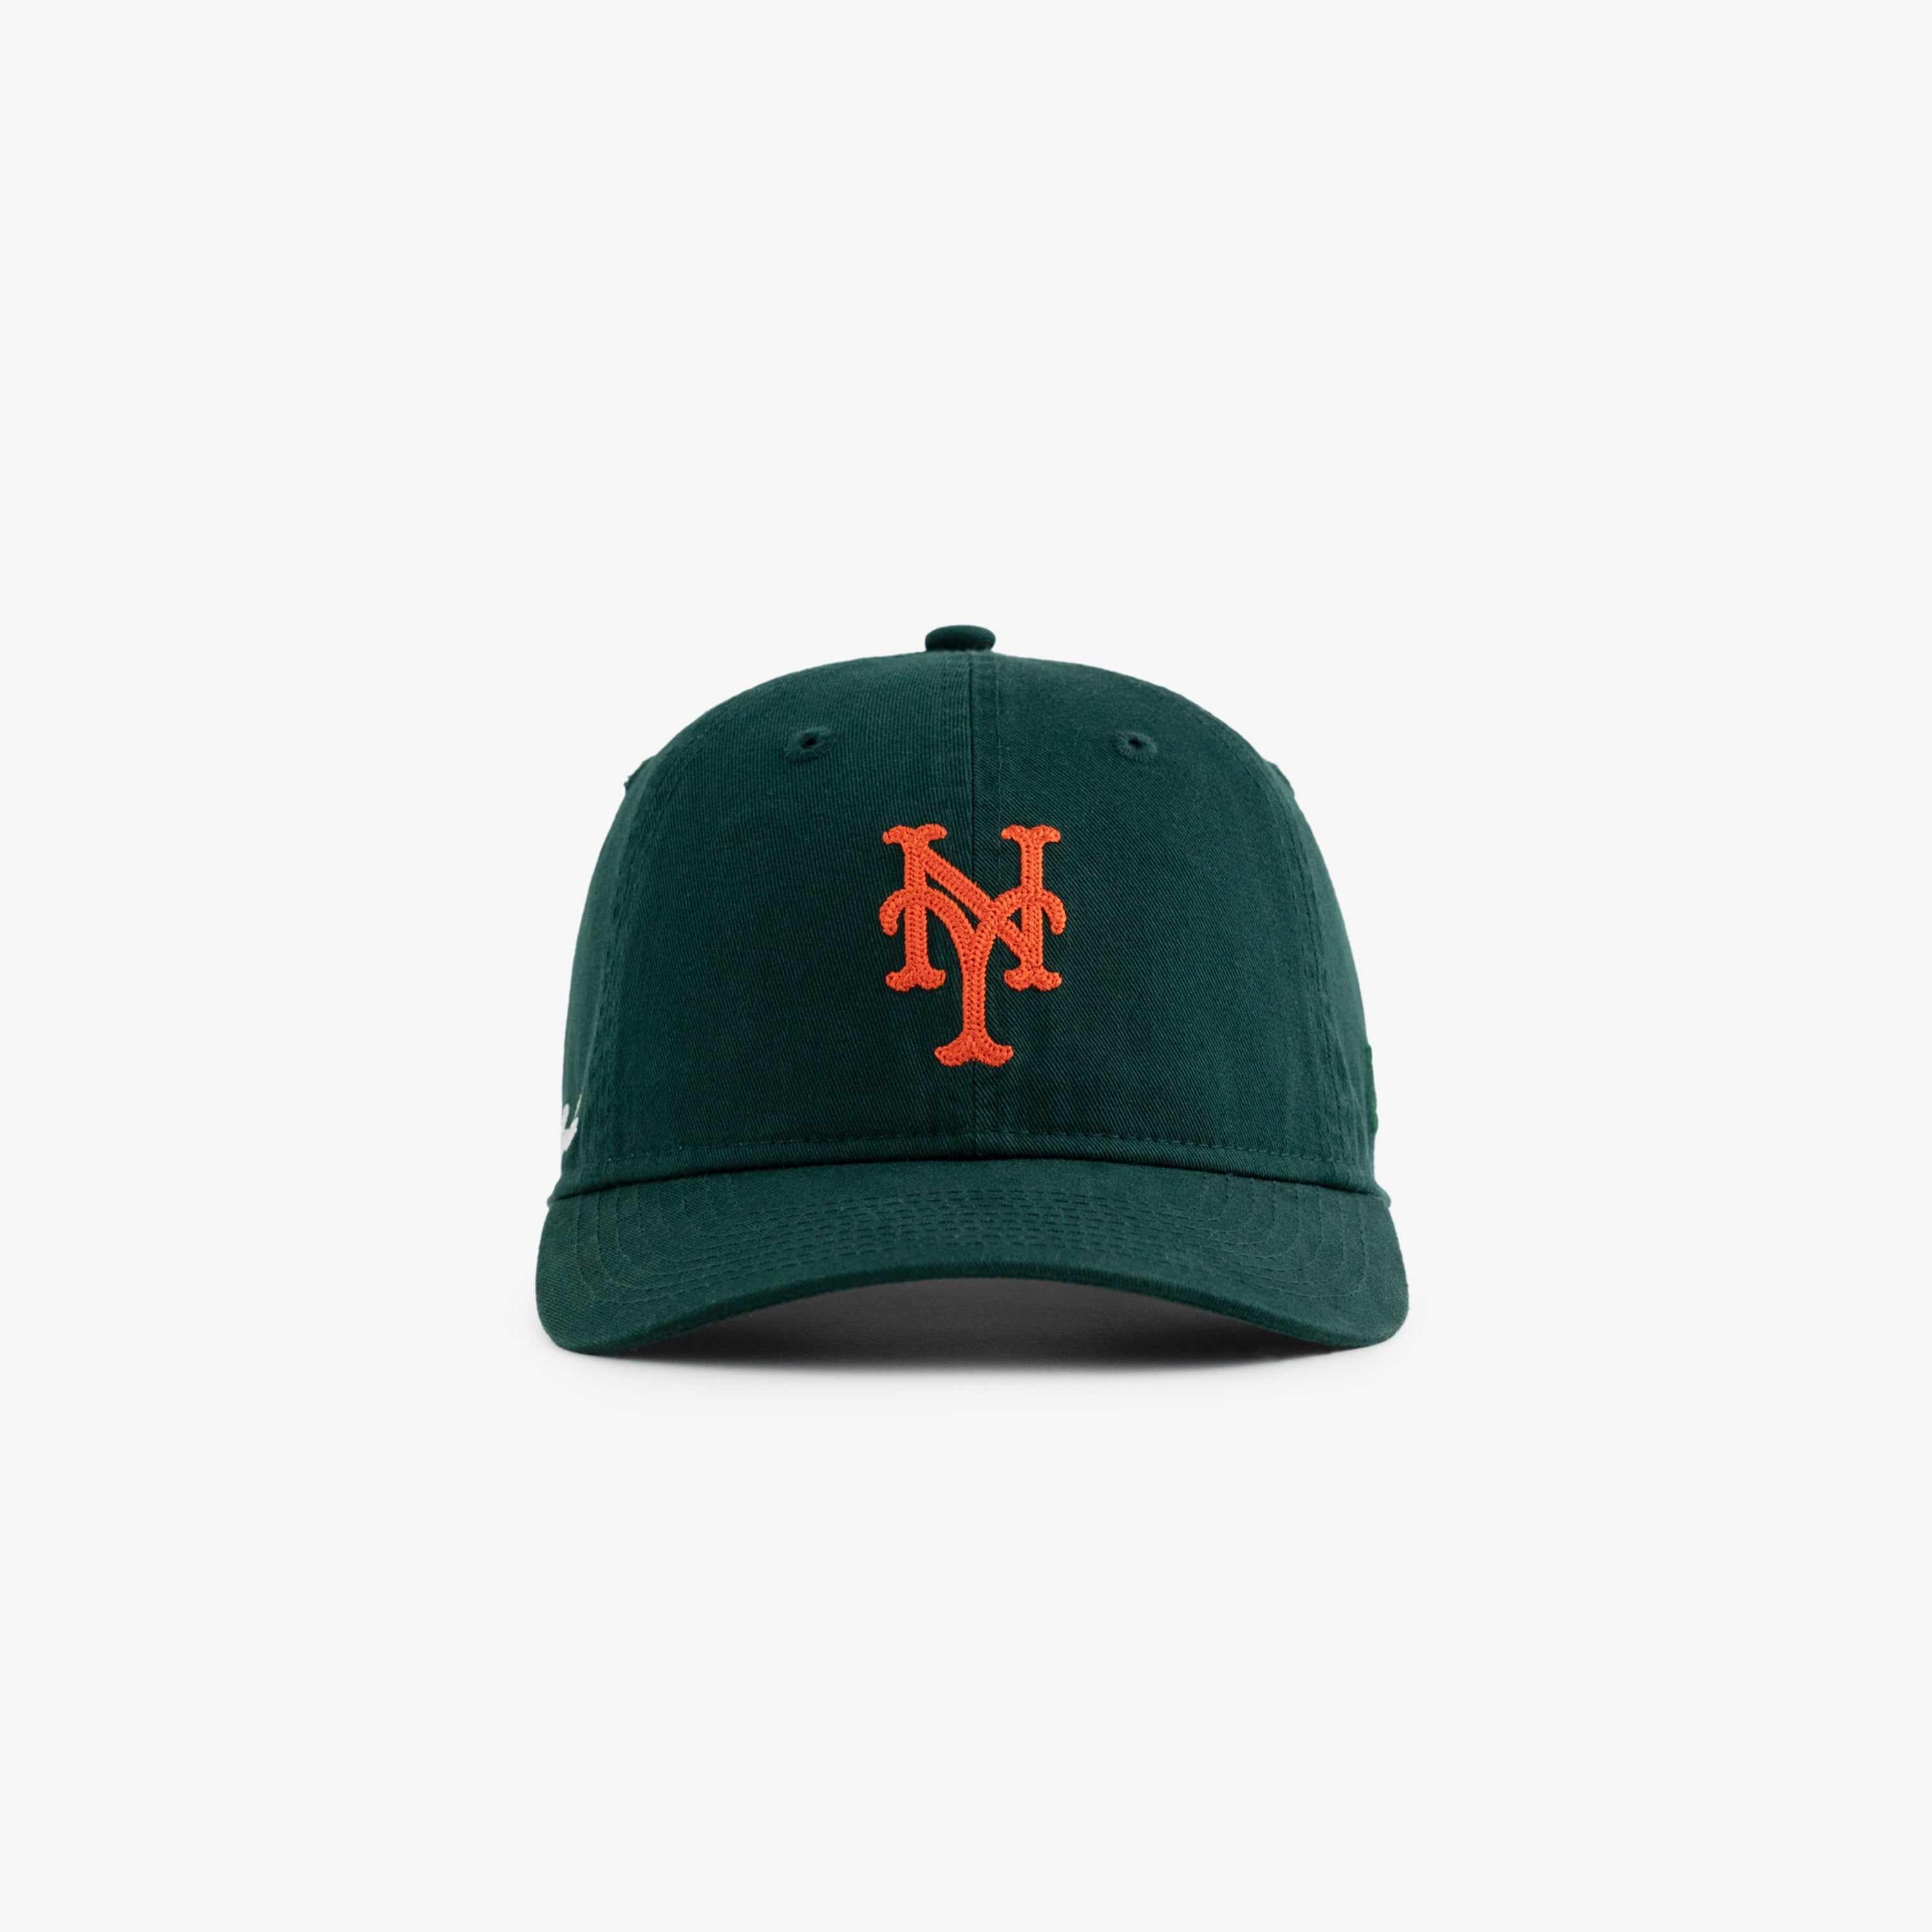 ALD / New Era Chain Stitch Mets Ballpark Hat